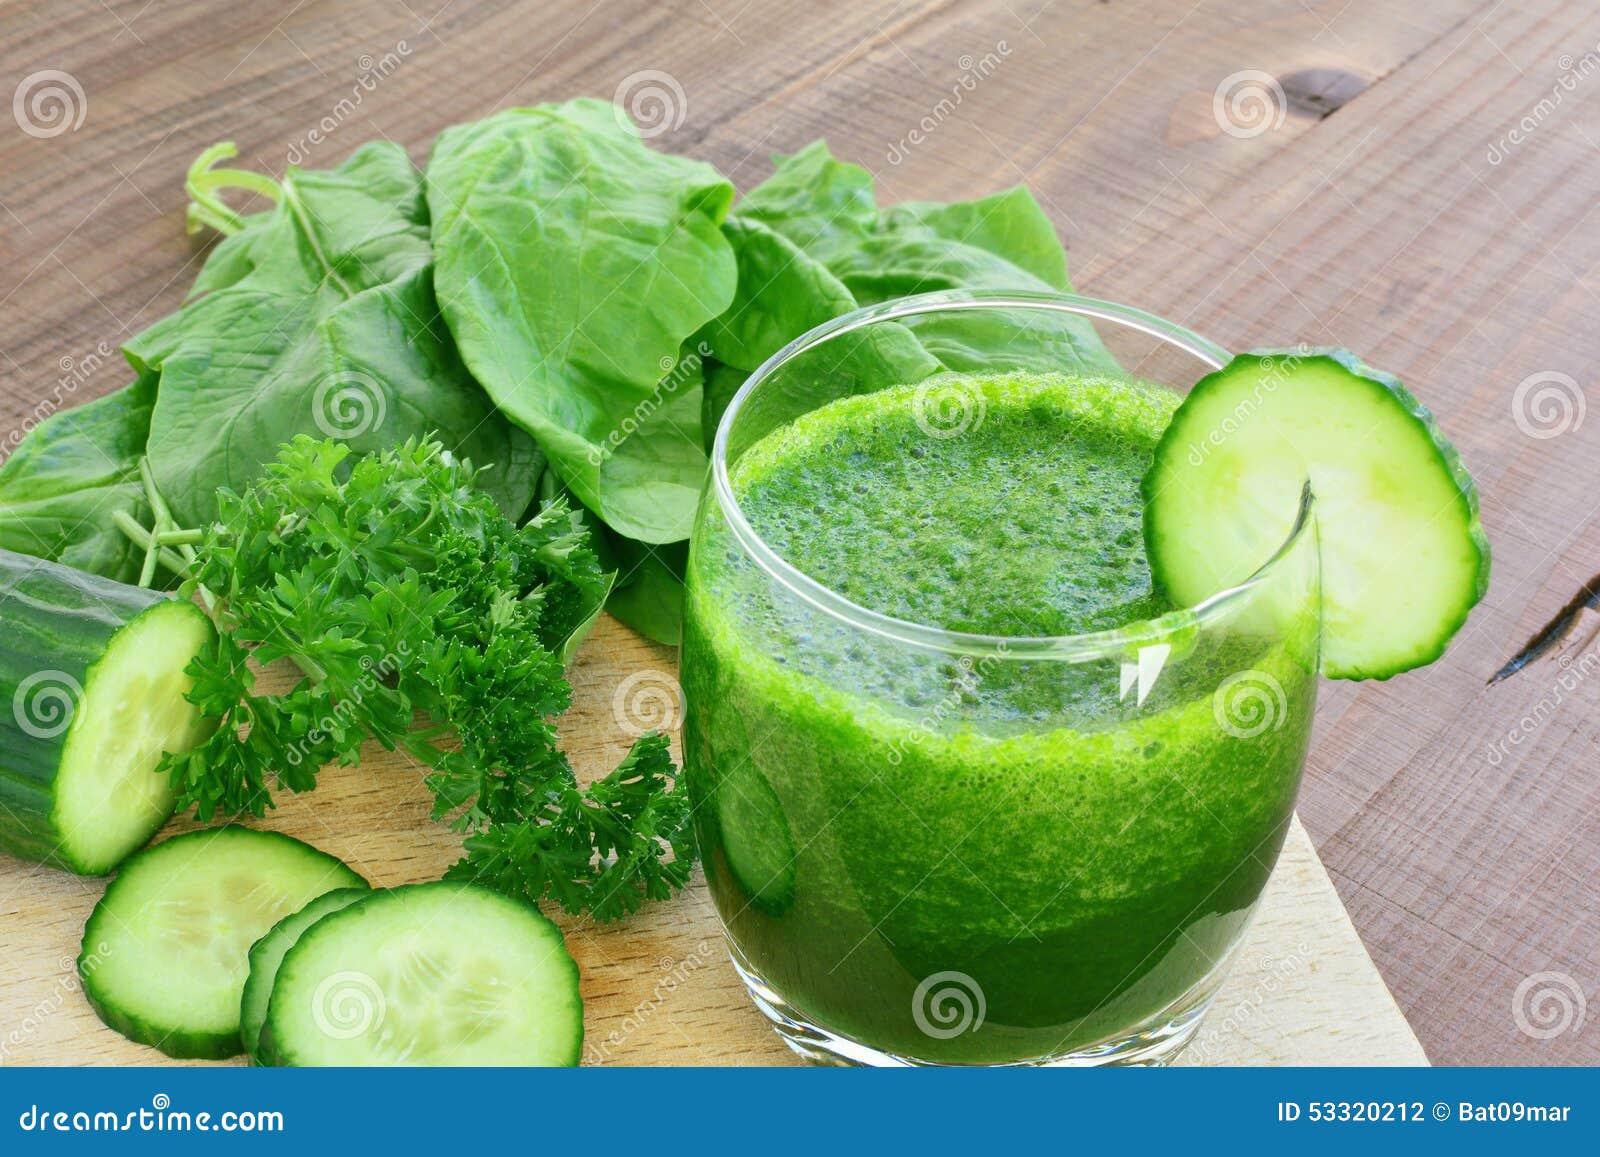 Grüner Gemüsesaft Und Frischgemüse Stockfoto - Bild von organisch ...